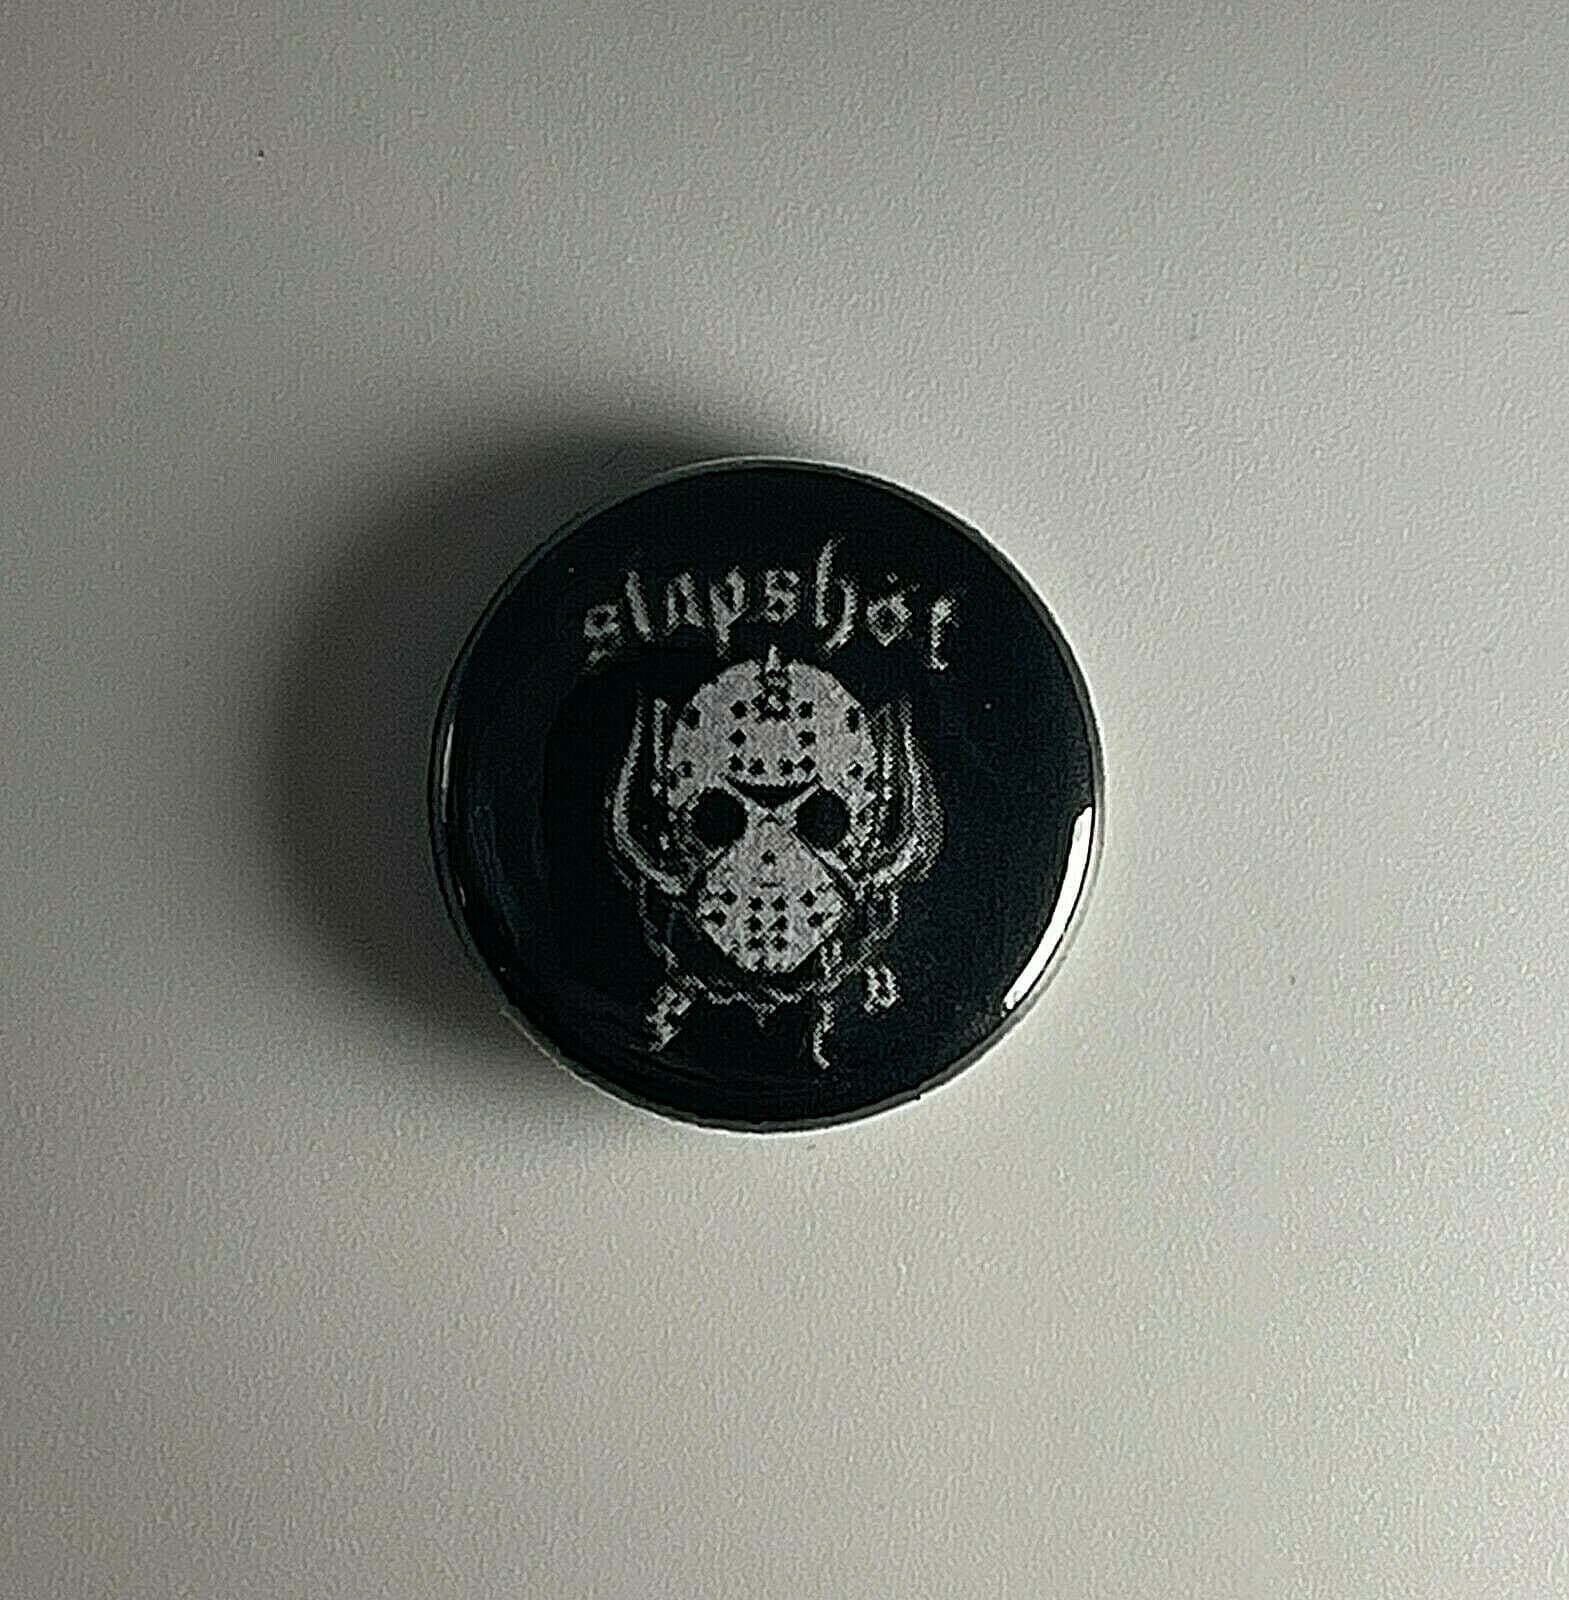 Slapshot Straight Edge 1 "Button S003B Badge Pin von Heavylowmerchandise